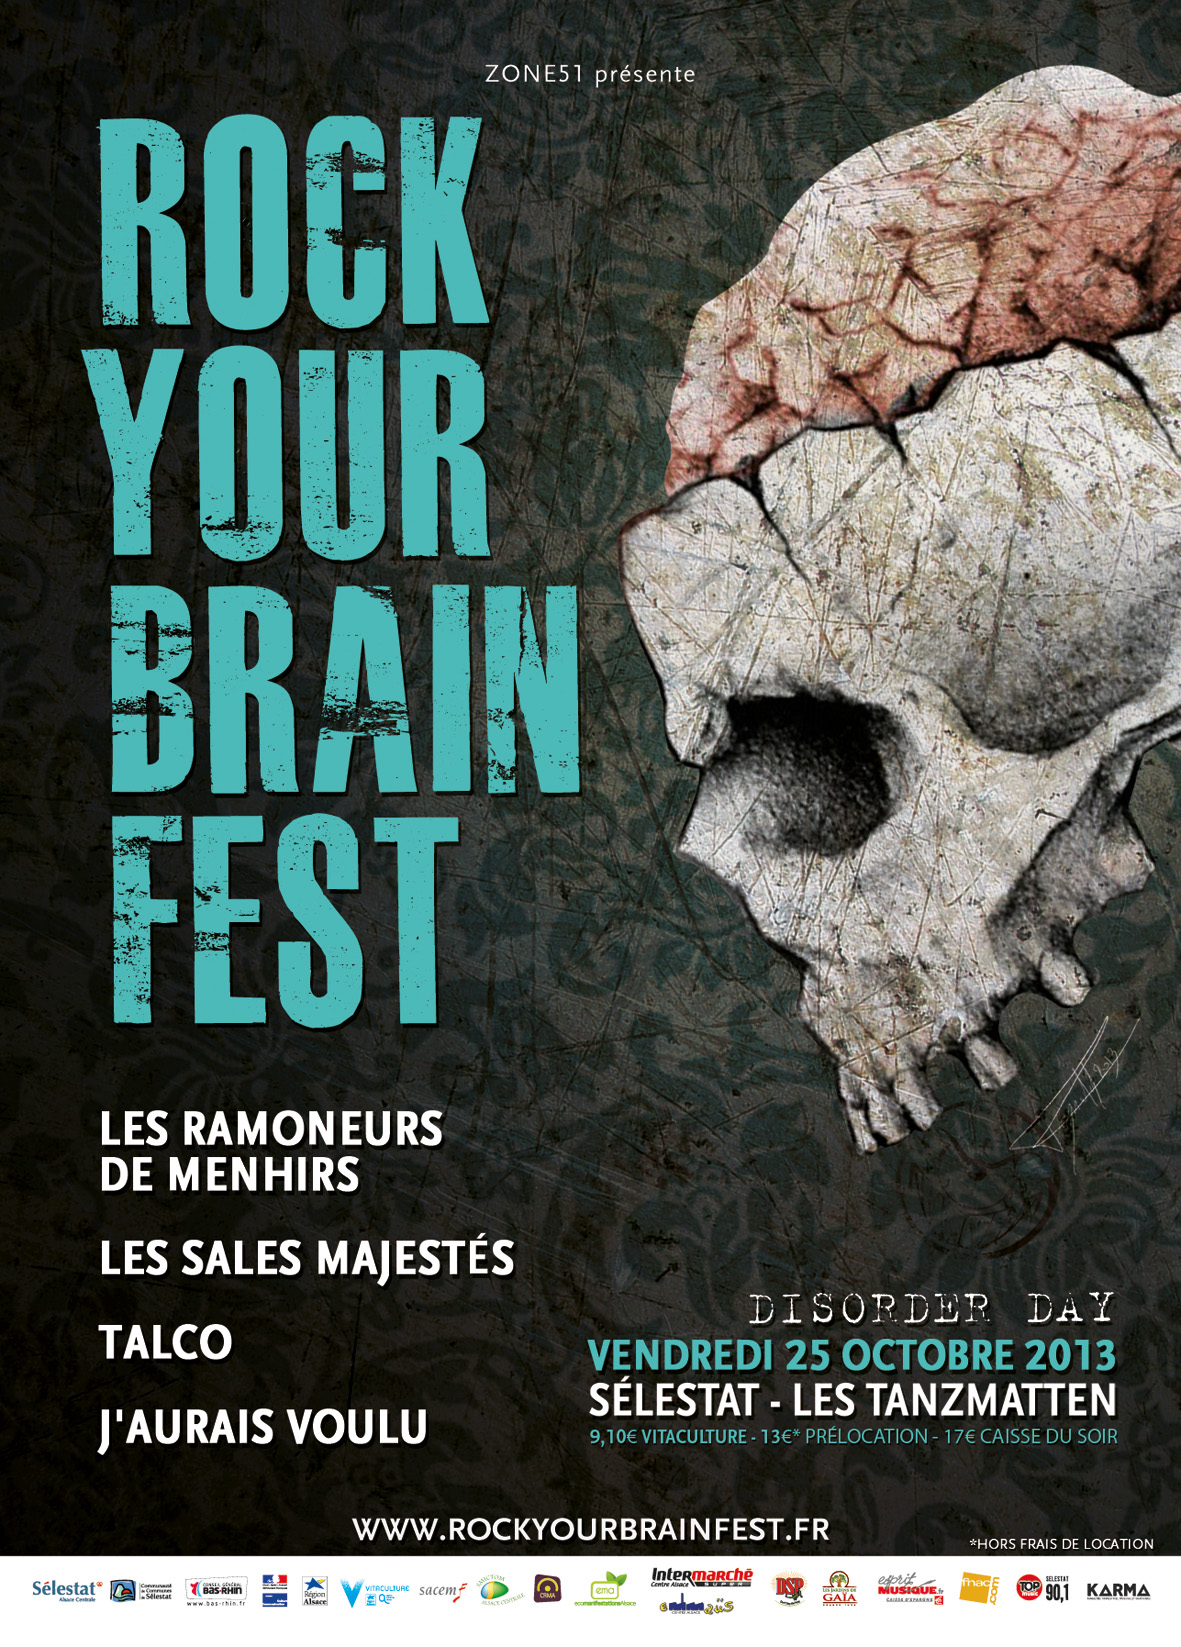 Rock your brain Fest